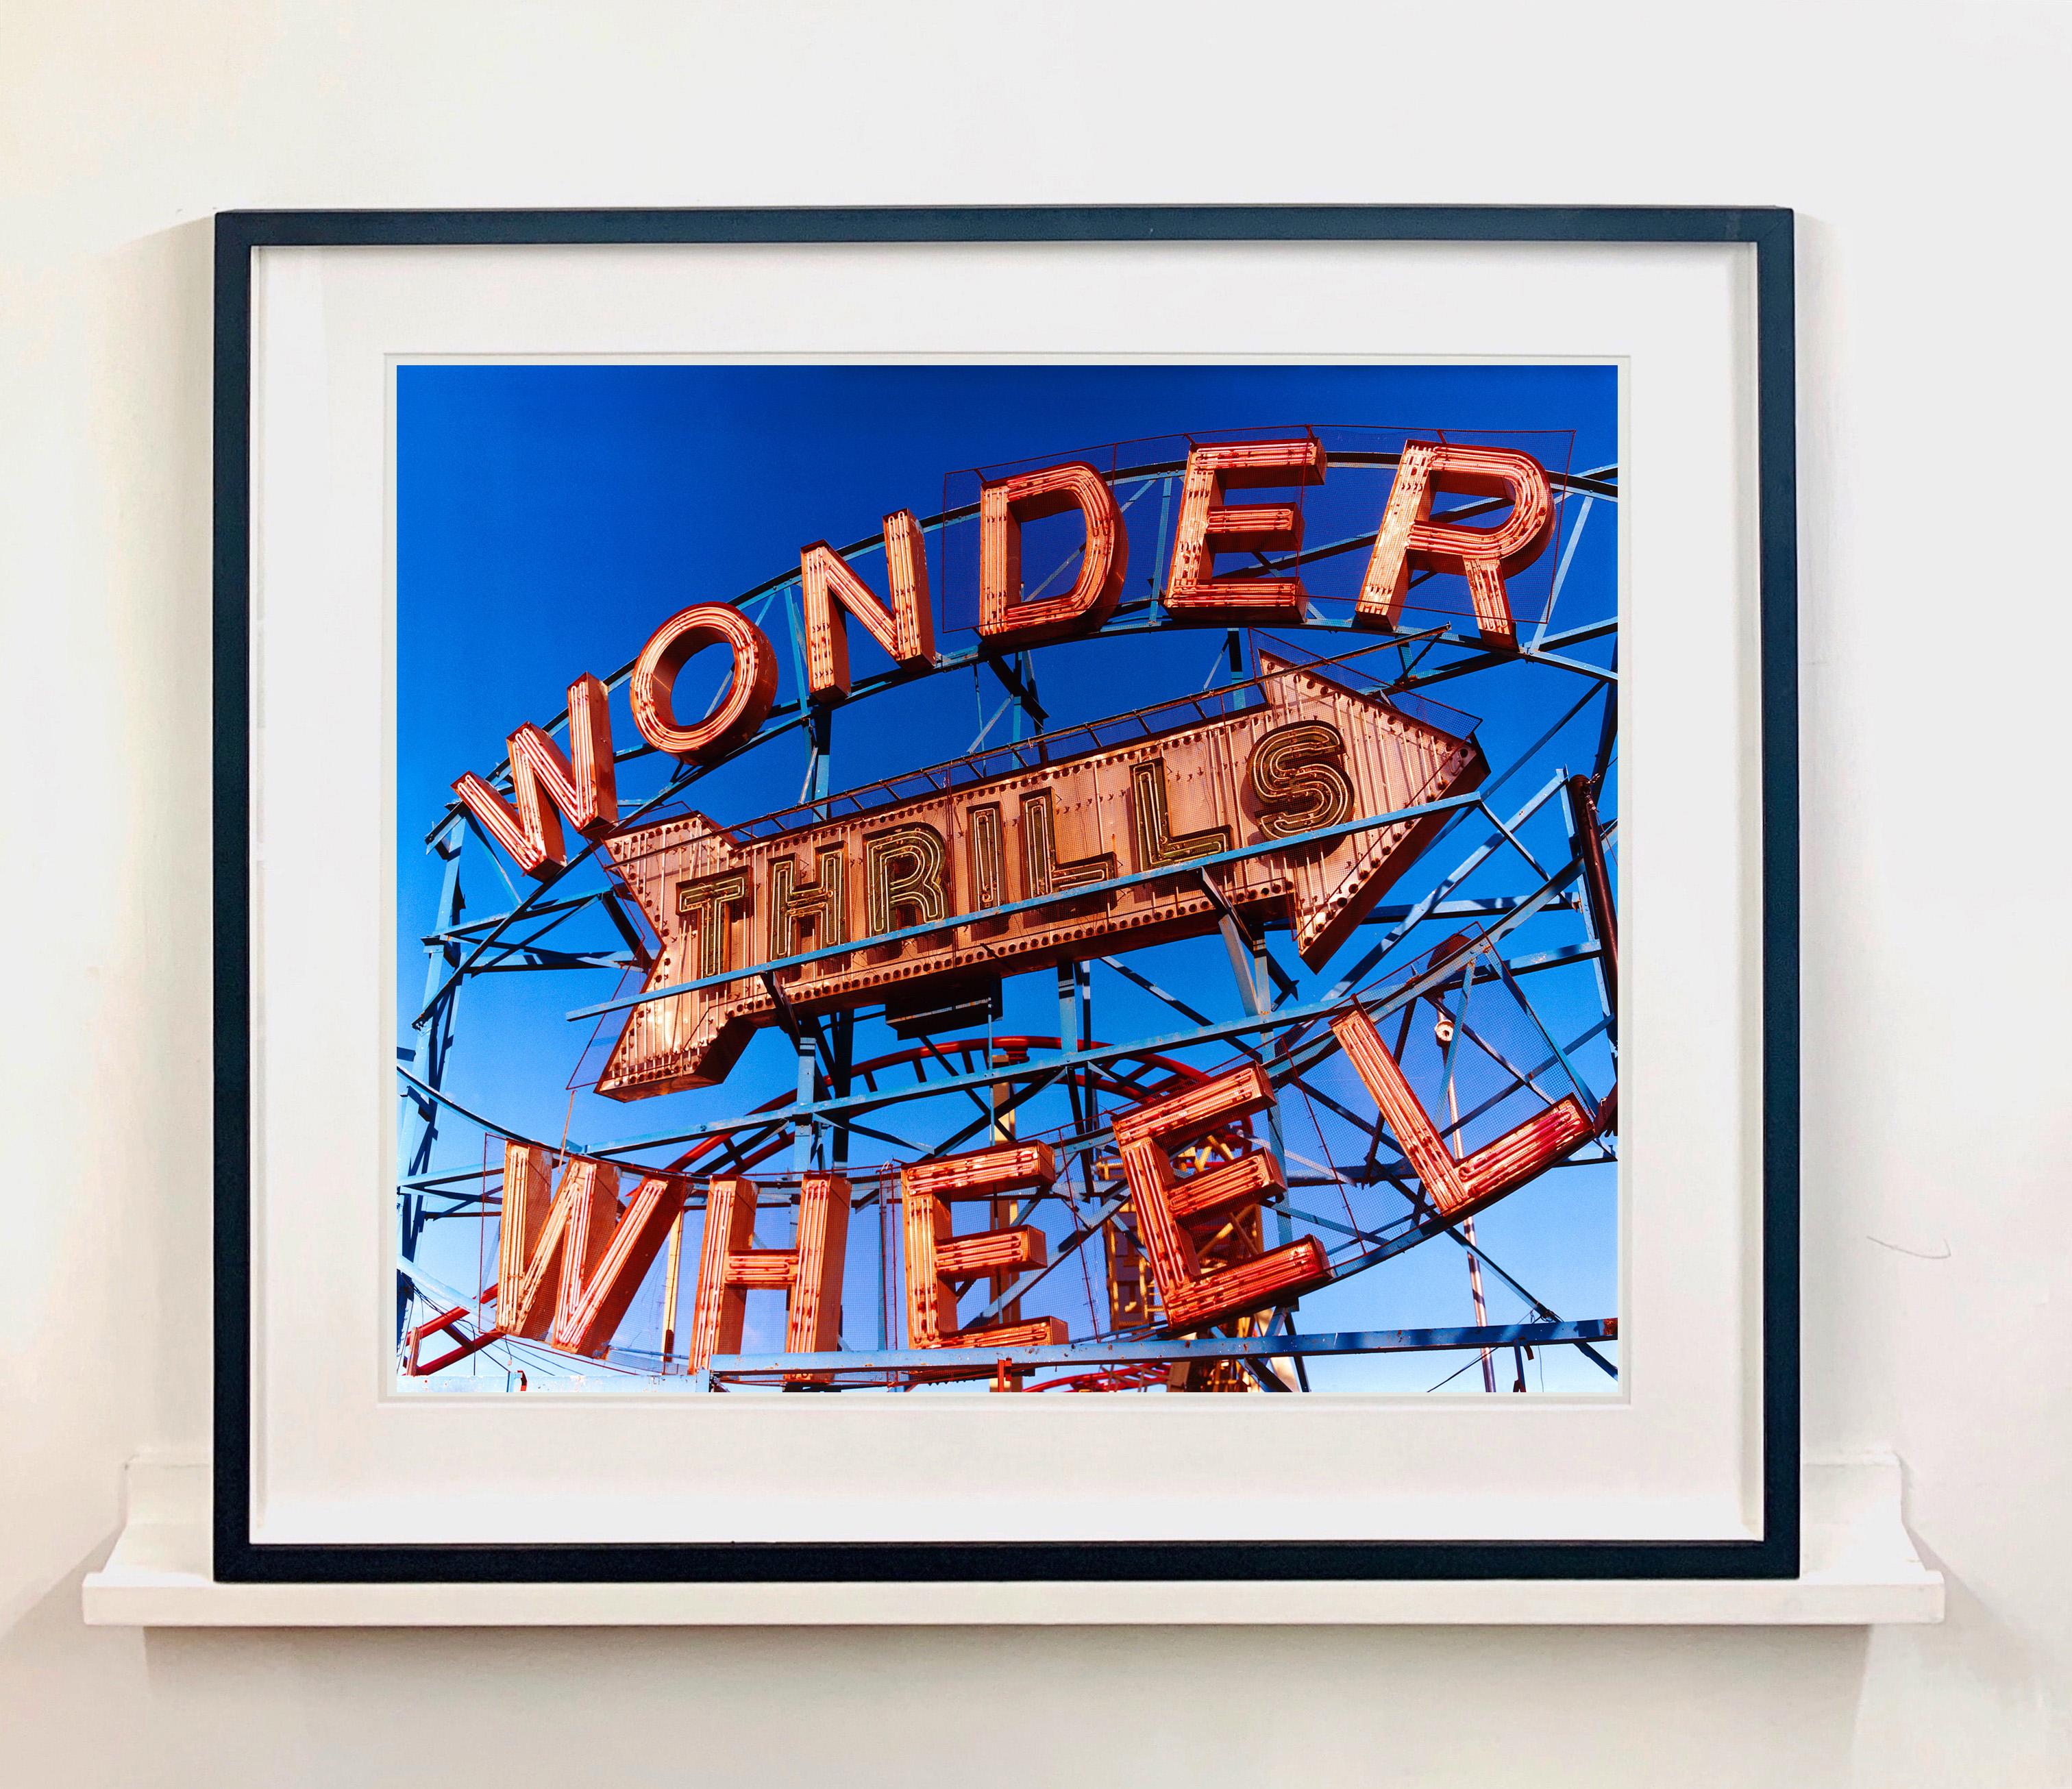 Thrills, Coney Island, New York – Architektur-Farbfotografie der Pop Art (Pop-Art), Photograph, von Richard Heeps